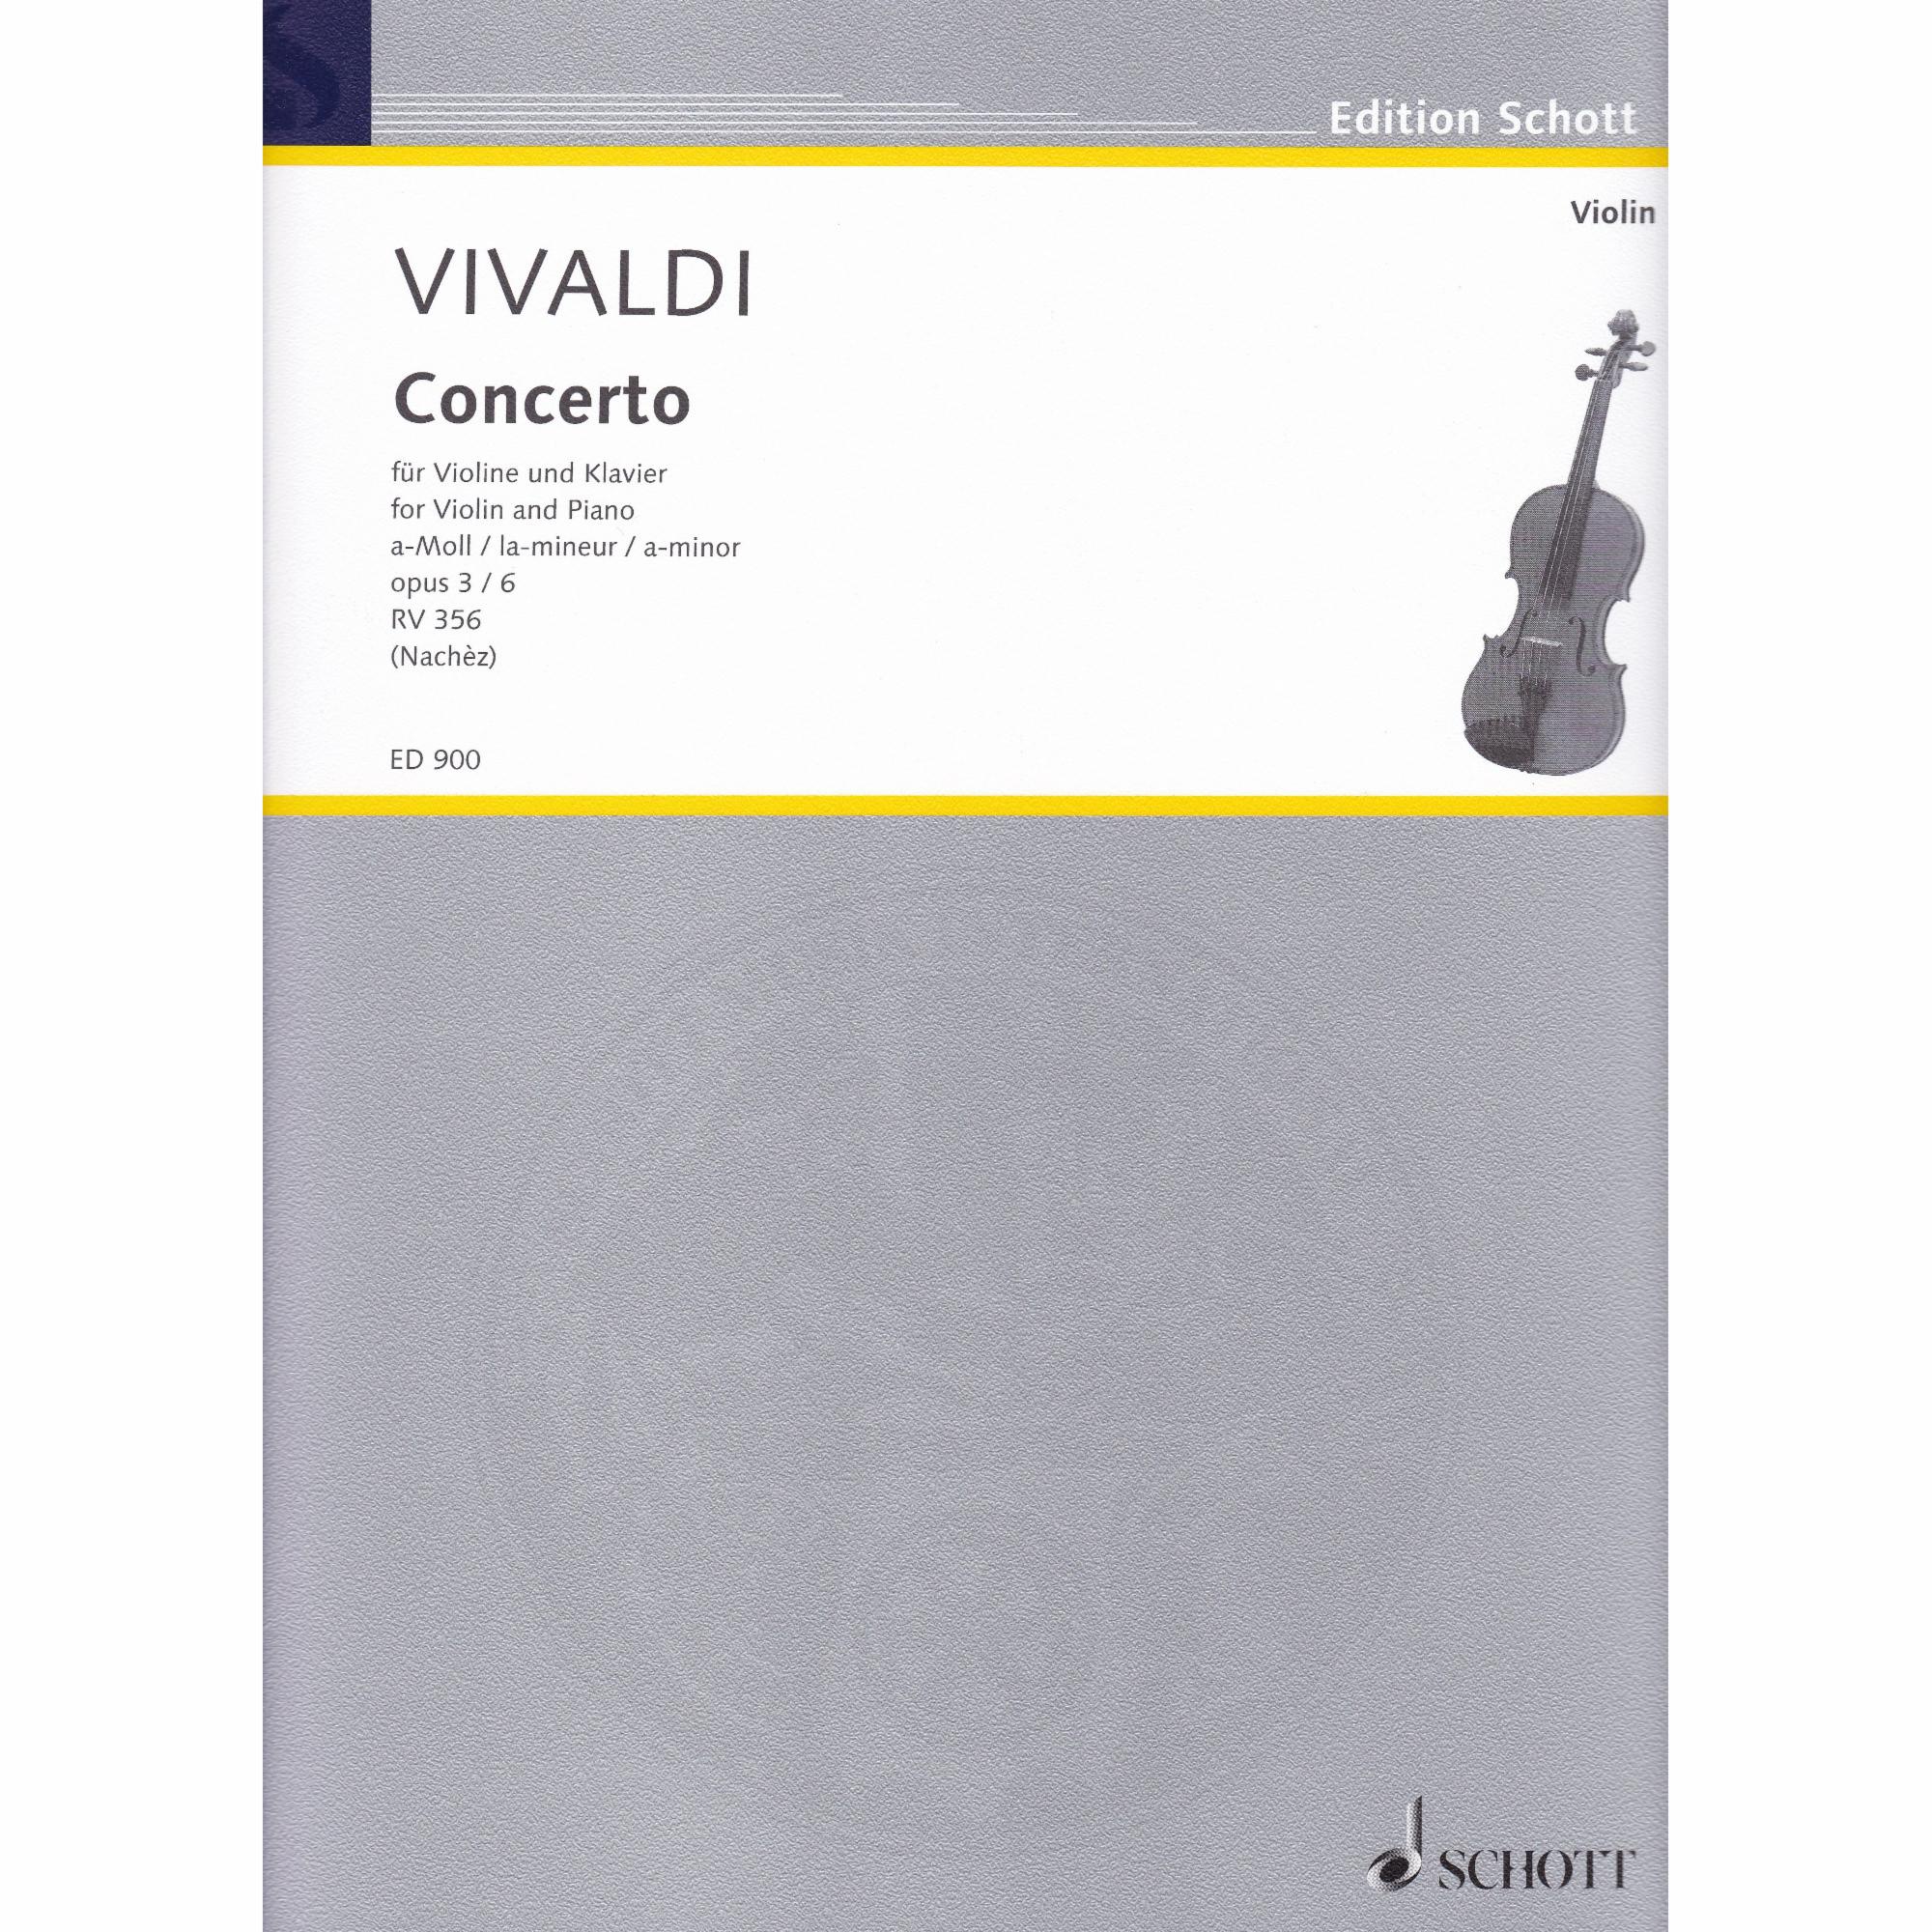 Violin Concerto in A Minor, Op. 3, No. 6